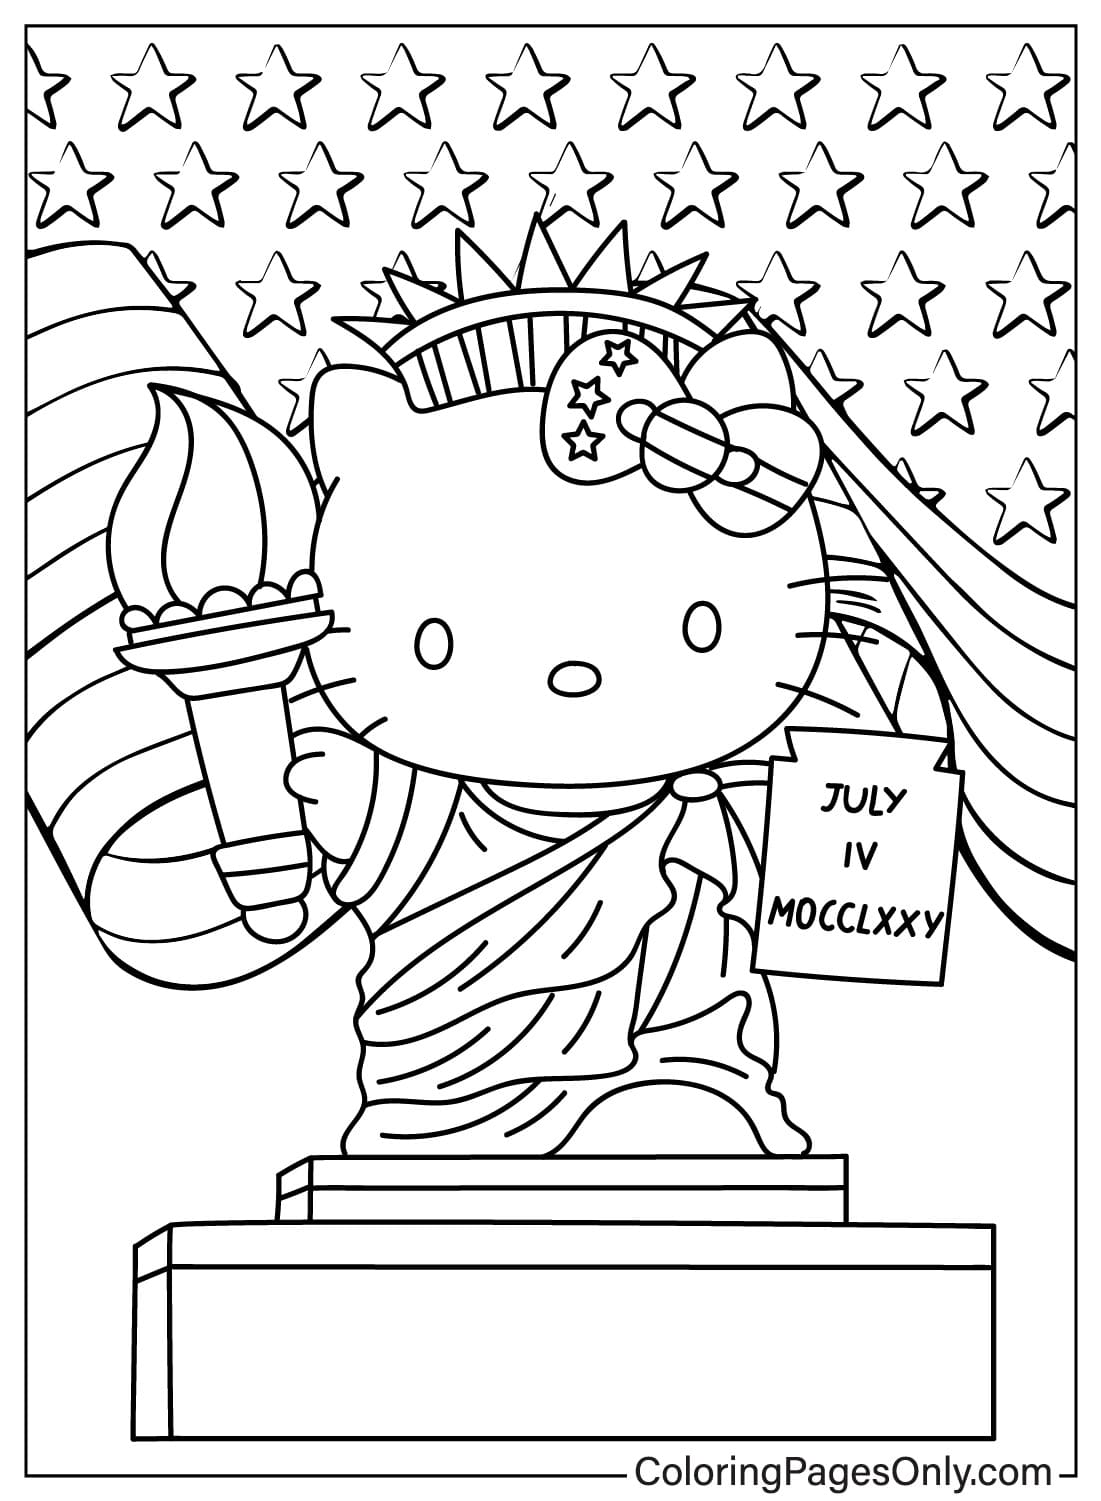 Página para colorear de Hello Kitty Estatua de la Libertad de Estatua de la Libertad